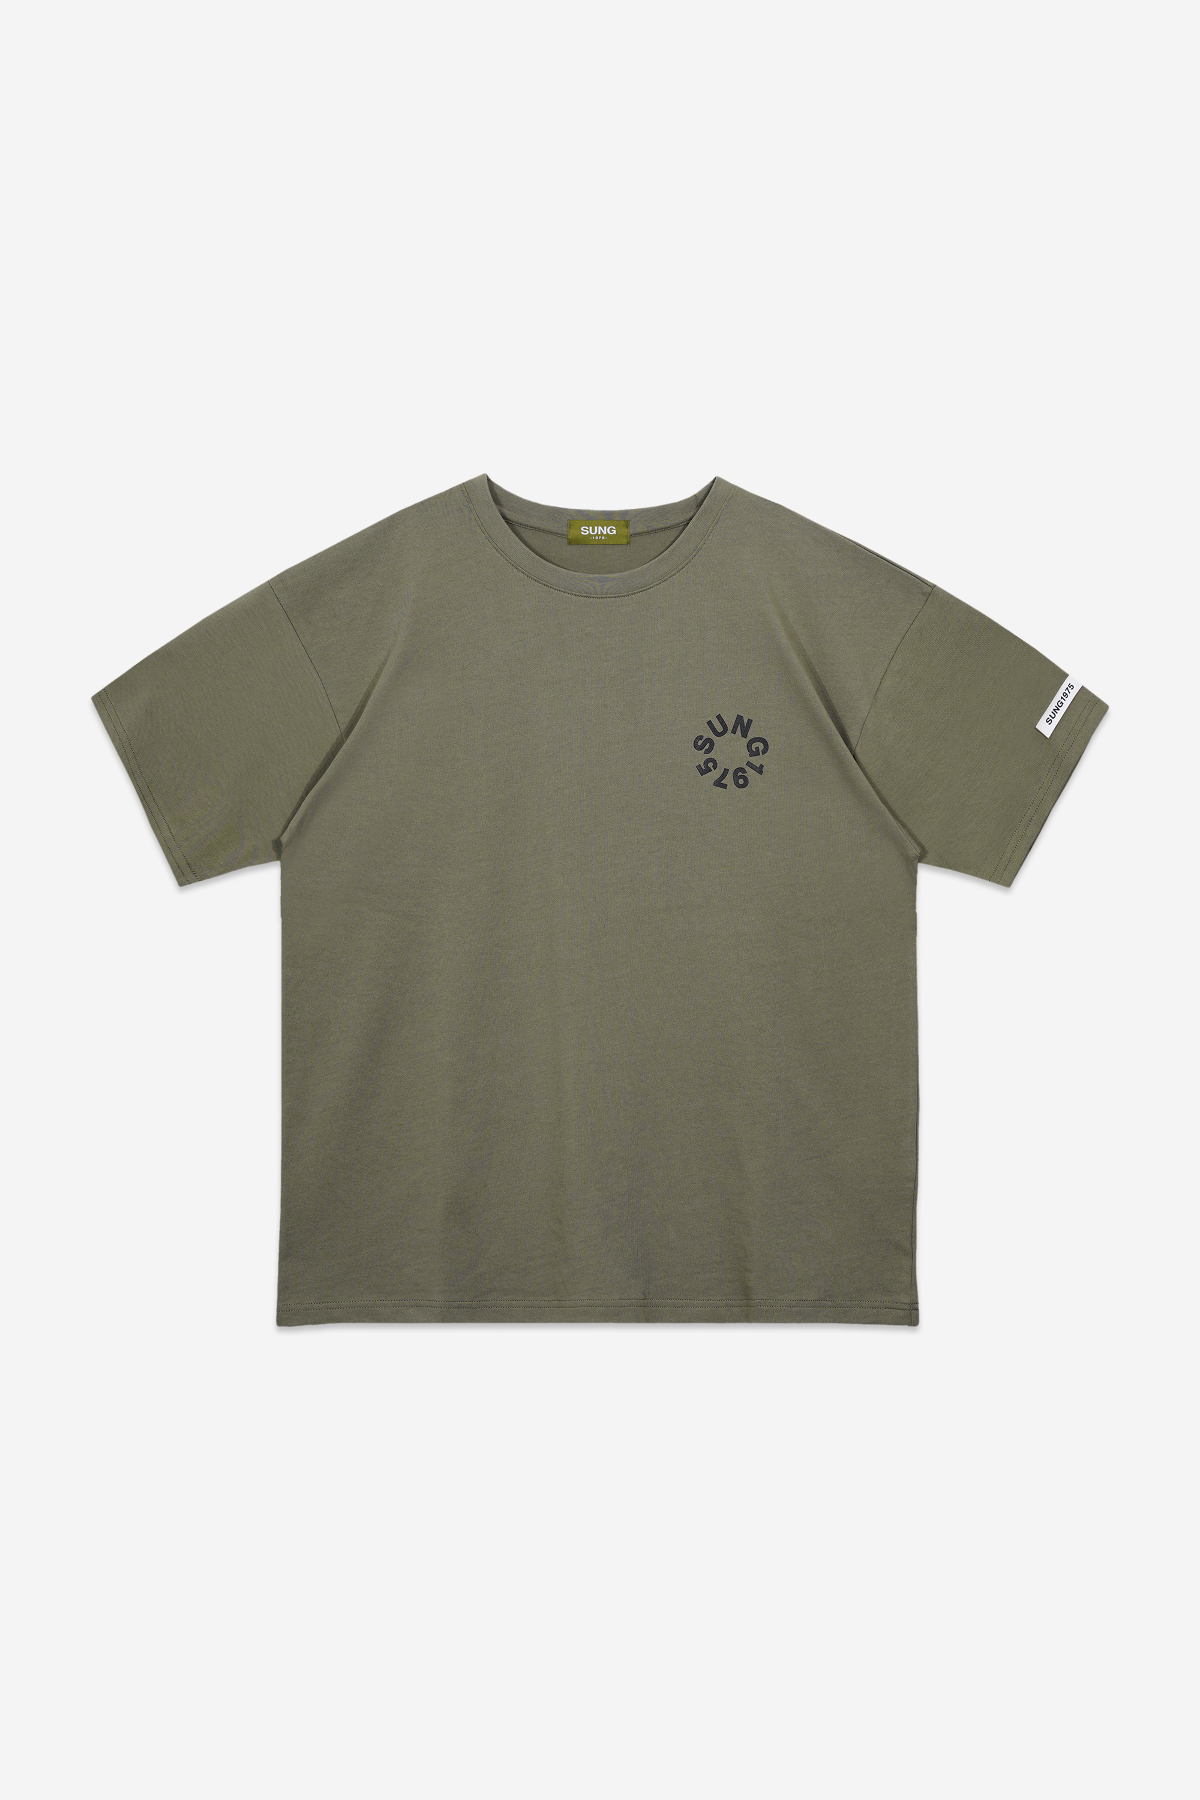 써클 리버스 티셔츠(SUNG-TS-03)